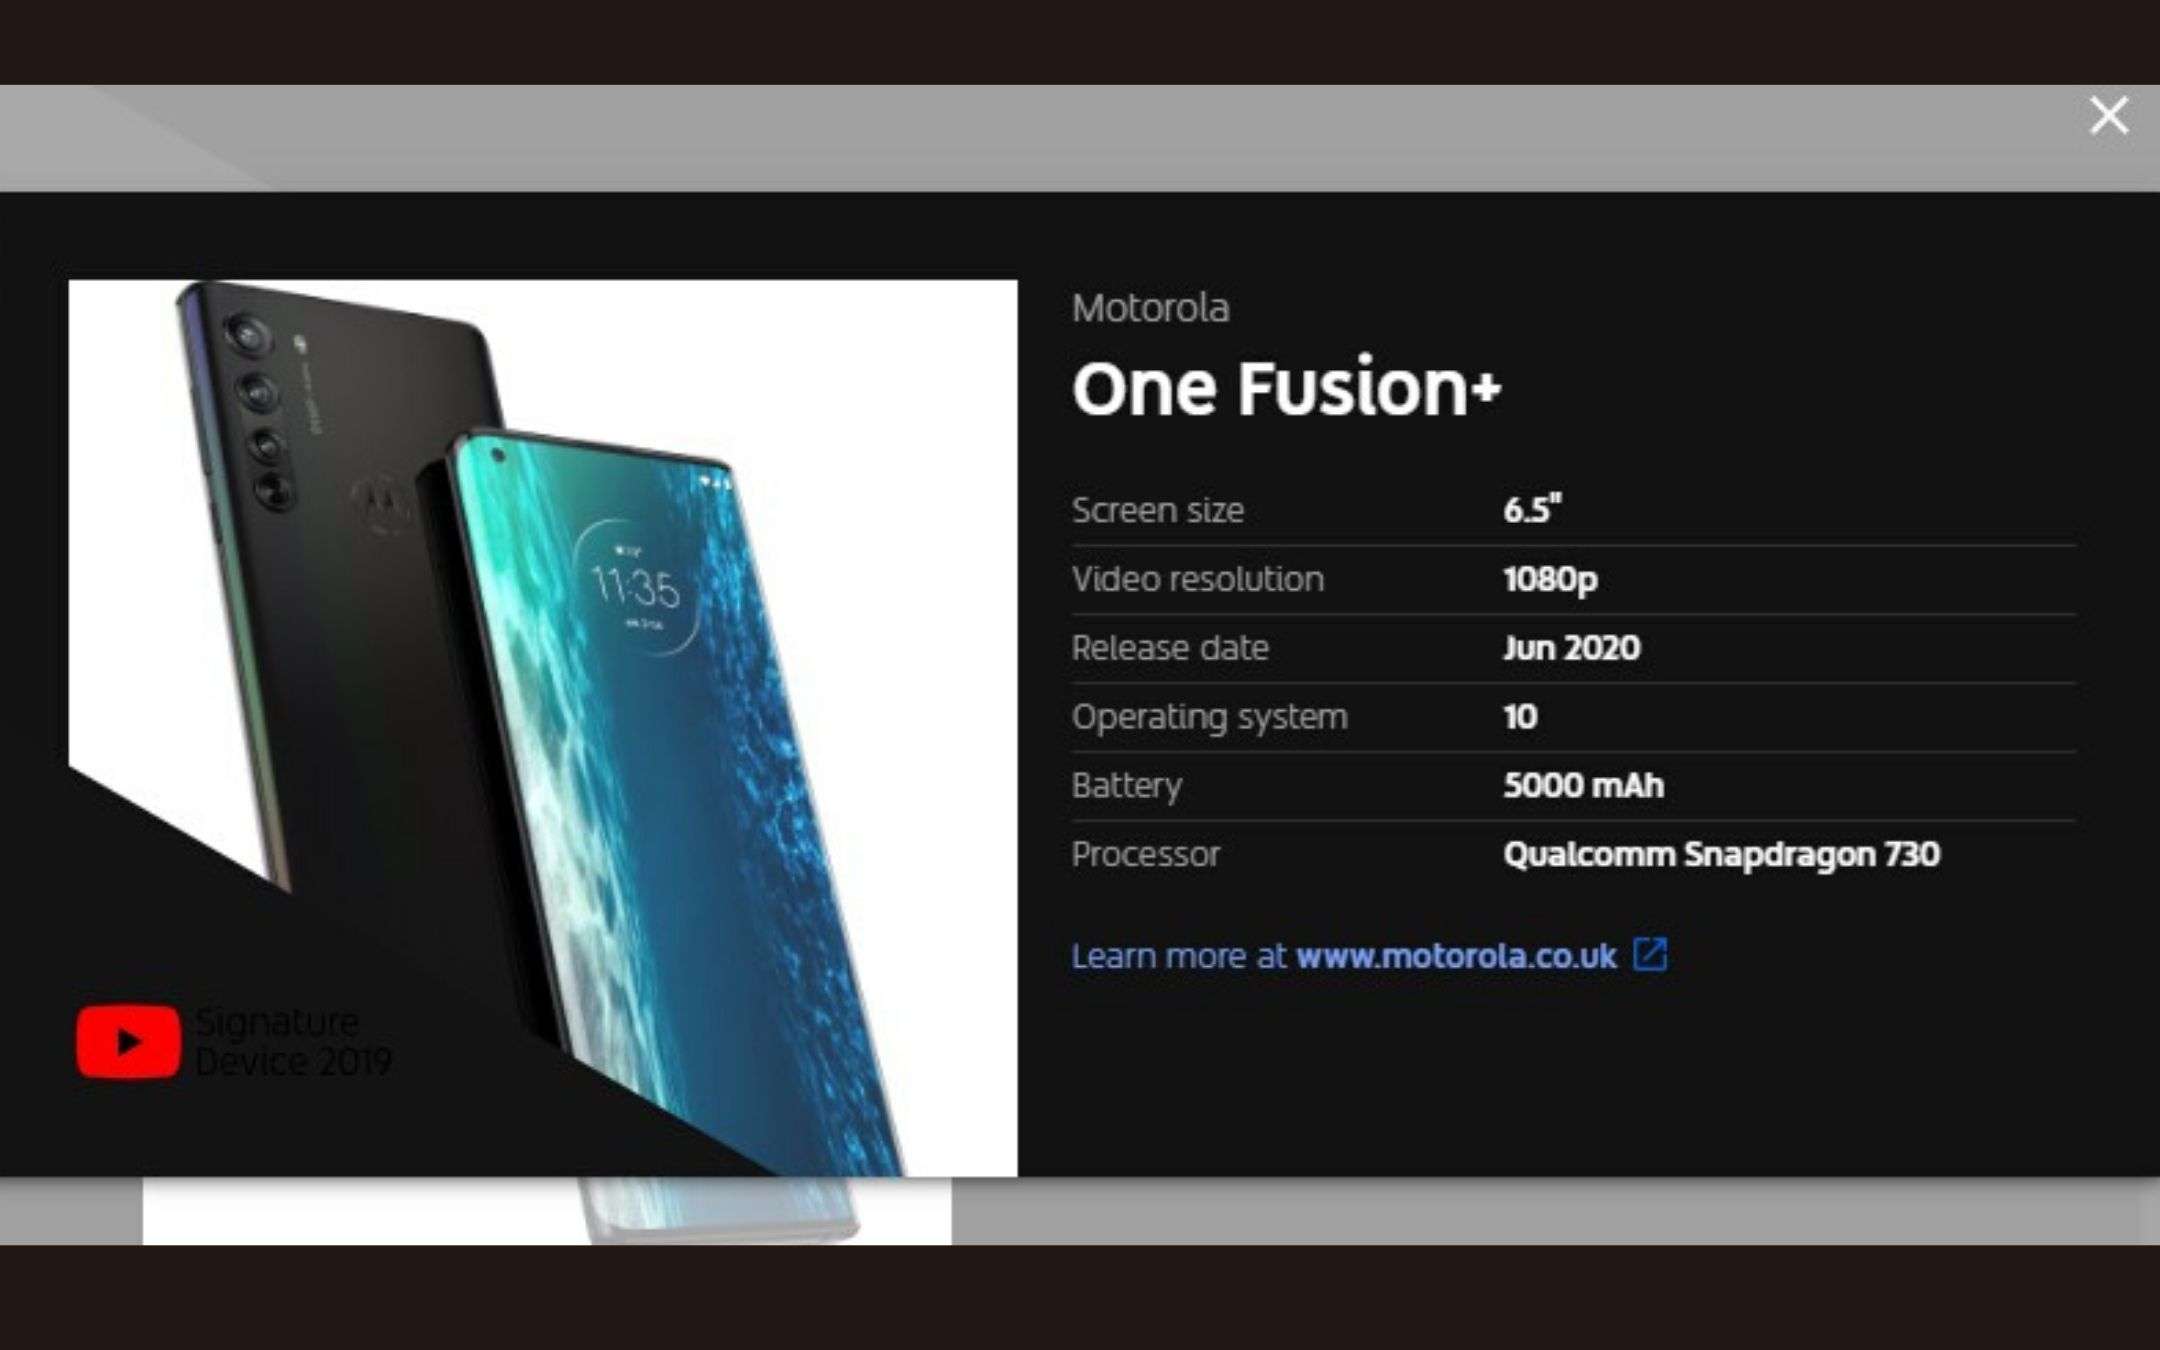 Motorola One Fusion+: specifiche tecniche rivelate